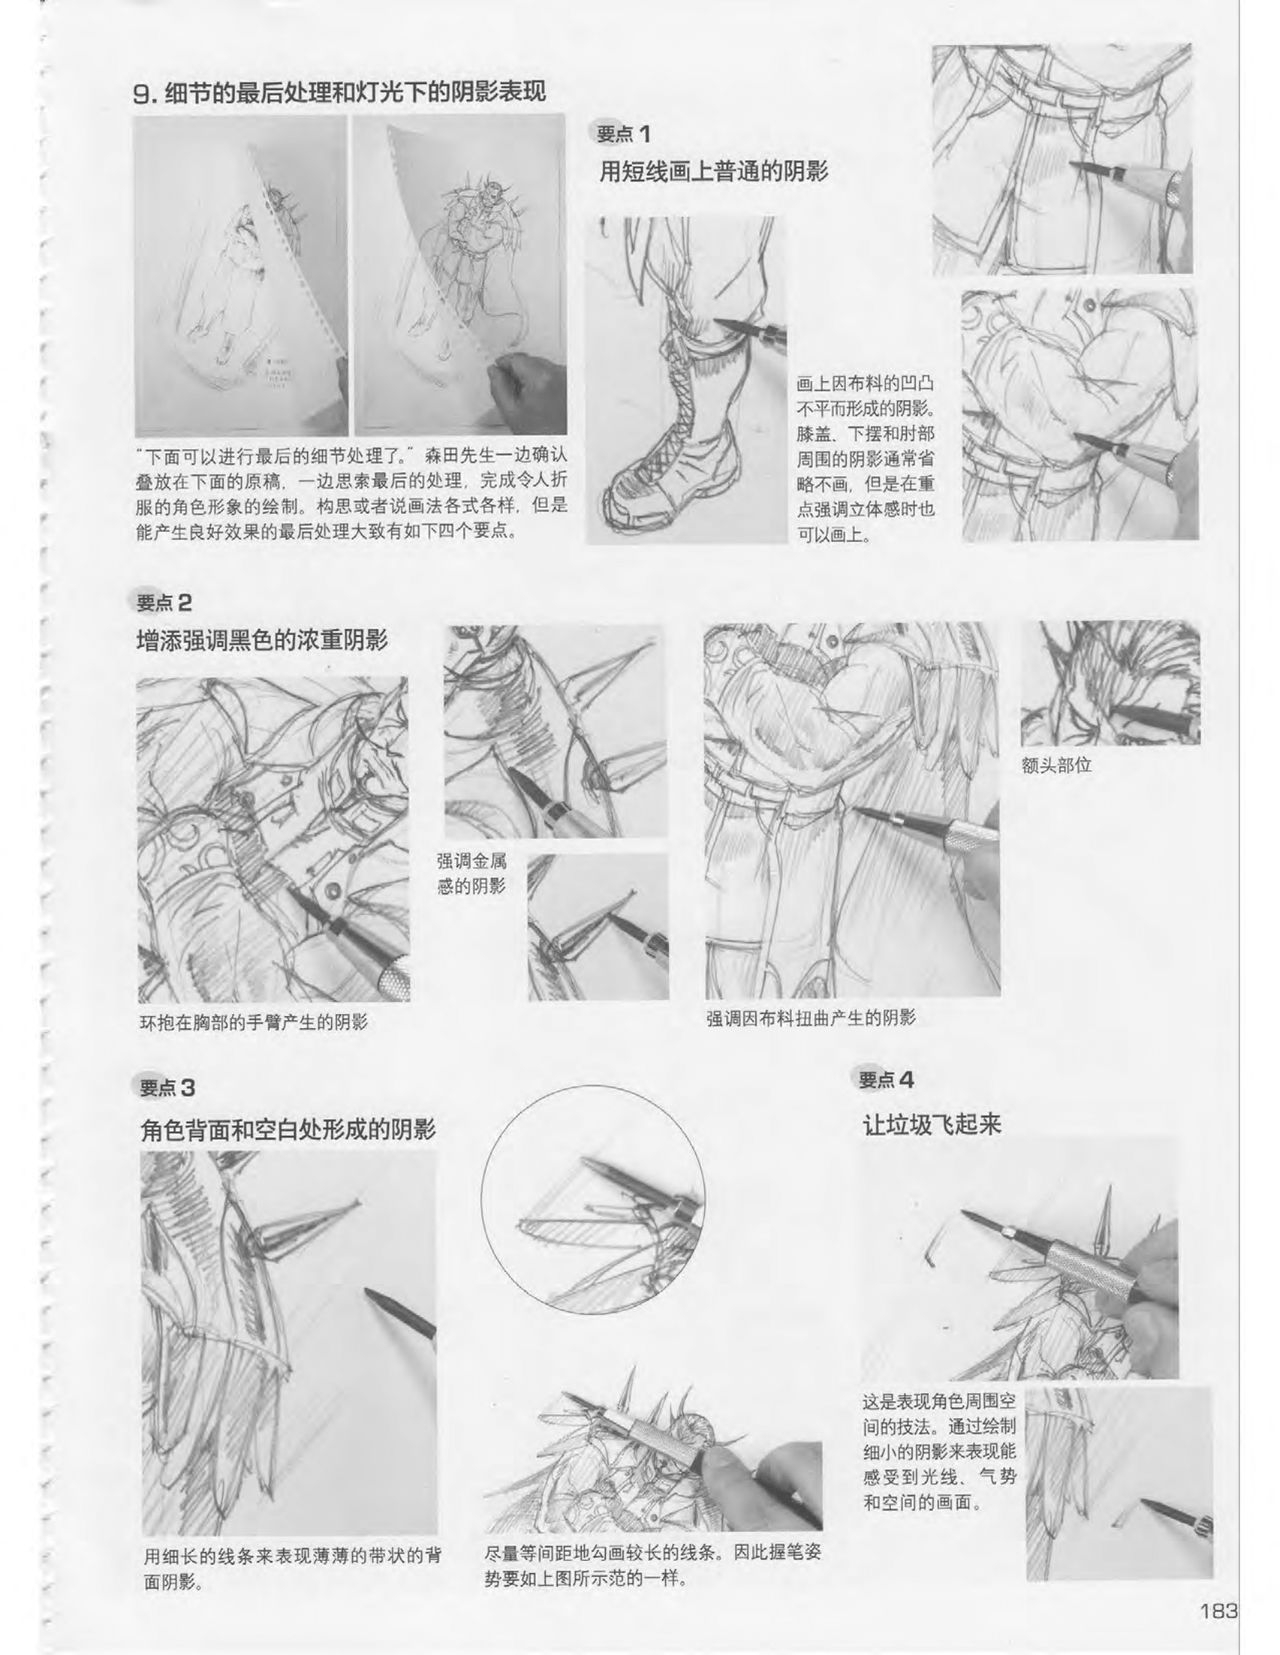 Japanese Manga Master Lecture 3: Lin Akira and Kakumaru Maru Talk About Glamorous Character Modeling 182